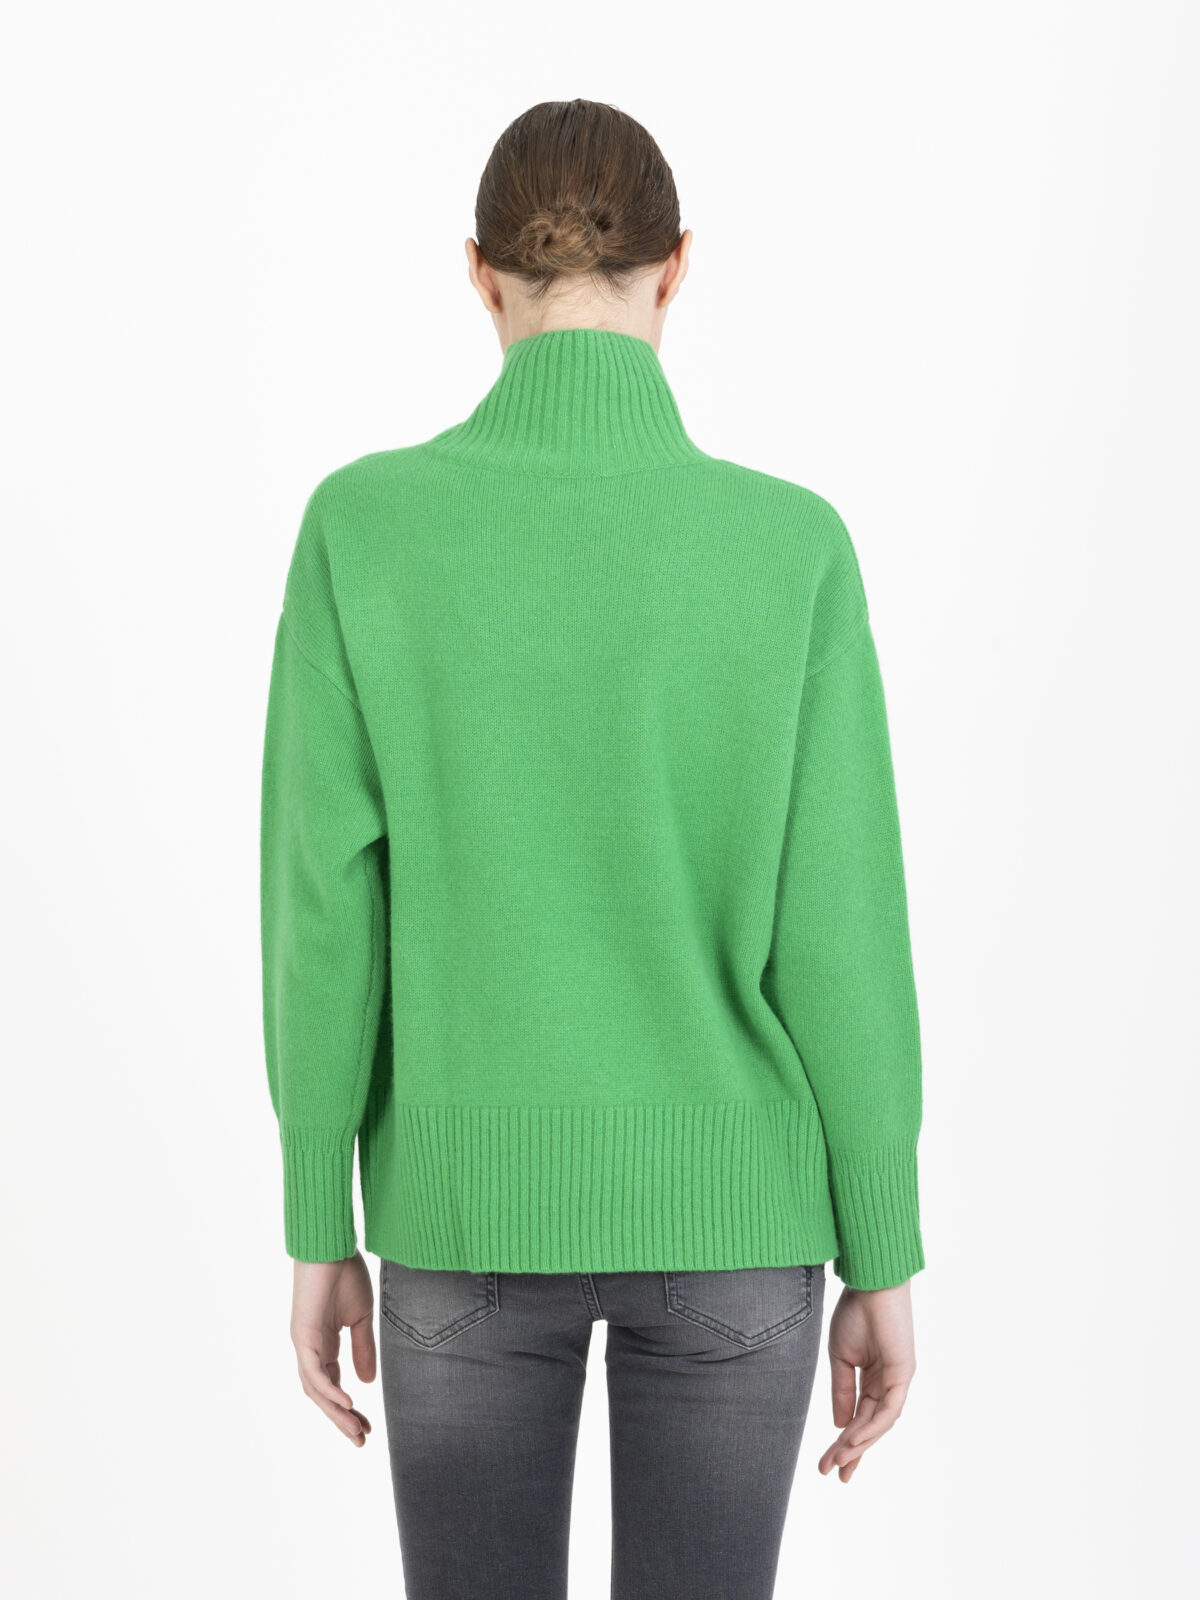 palace-green-turtleneck-sweater-wool-oversized-suncoo-matchboxathens